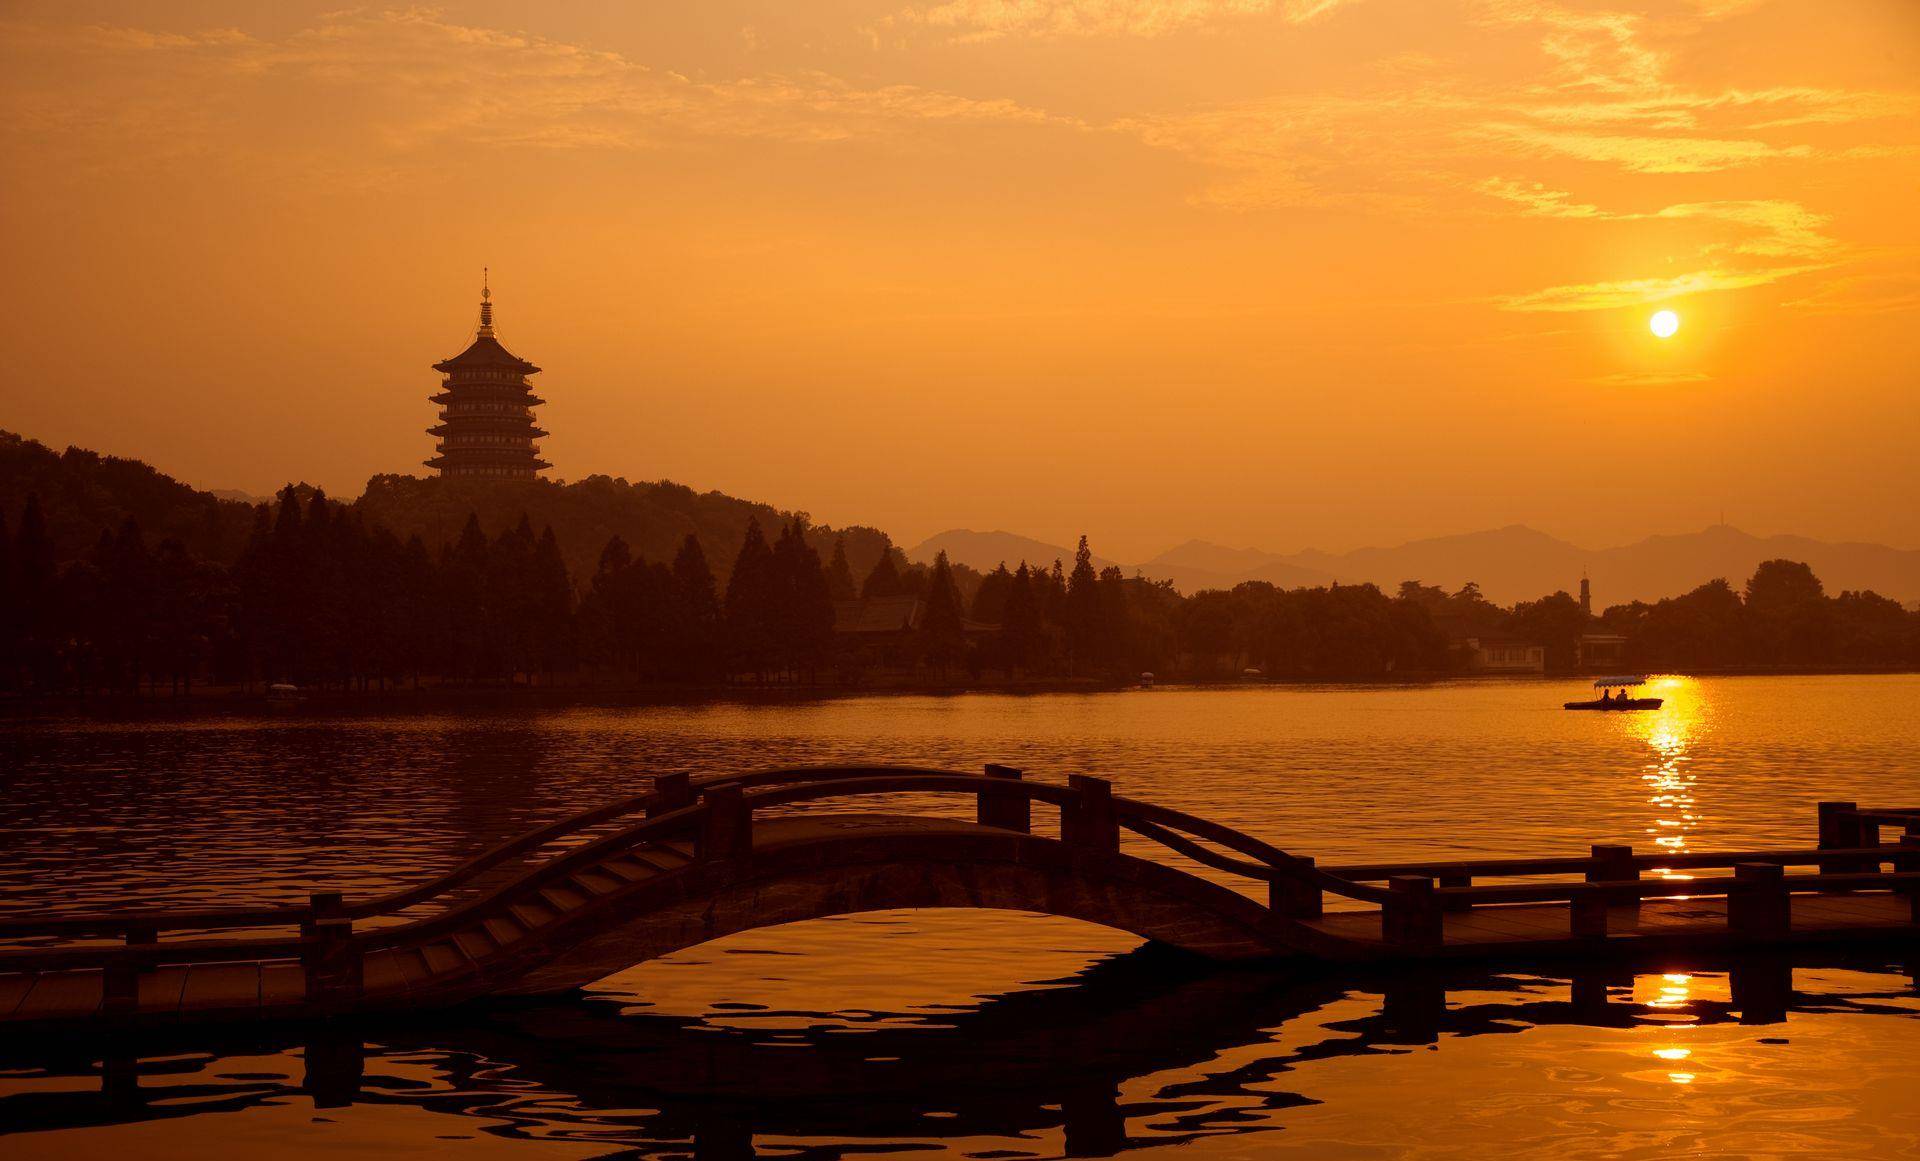 杭州西湖名气之盛,少有景点能够与之相比.